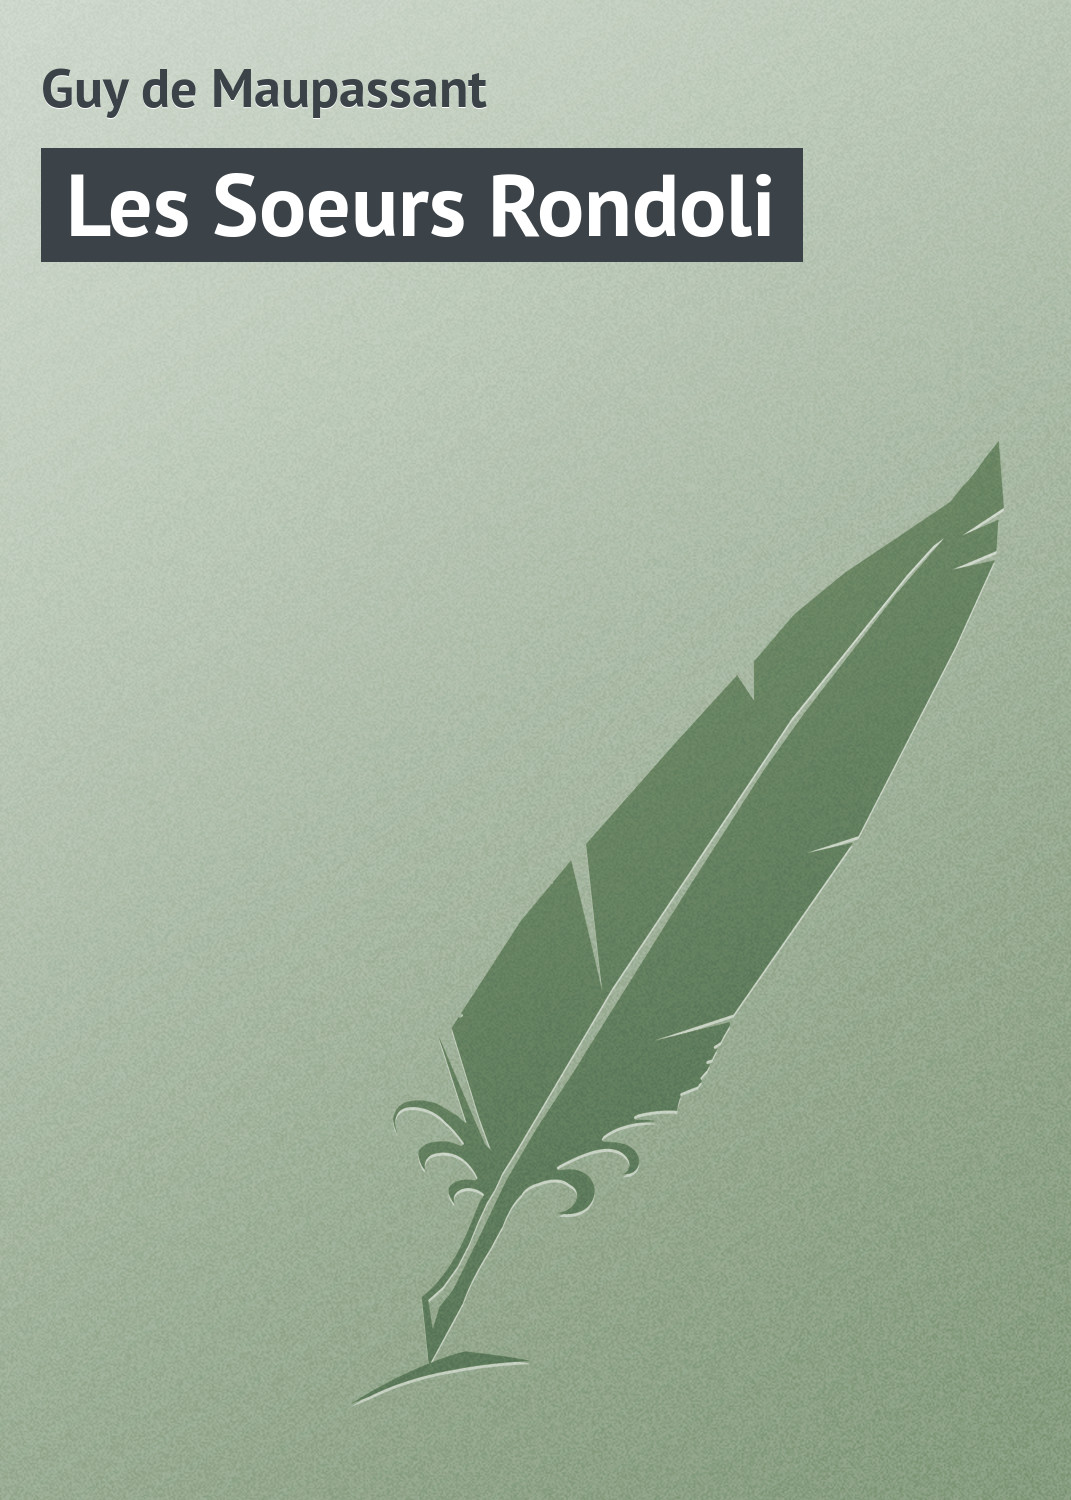 Книга Les Soeurs Rondoli из серии , созданная Guy Maupassant, может относится к жанру Зарубежная старинная литература, Зарубежная классика. Стоимость электронной книги Les Soeurs Rondoli с идентификатором 21104726 составляет 5.99 руб.